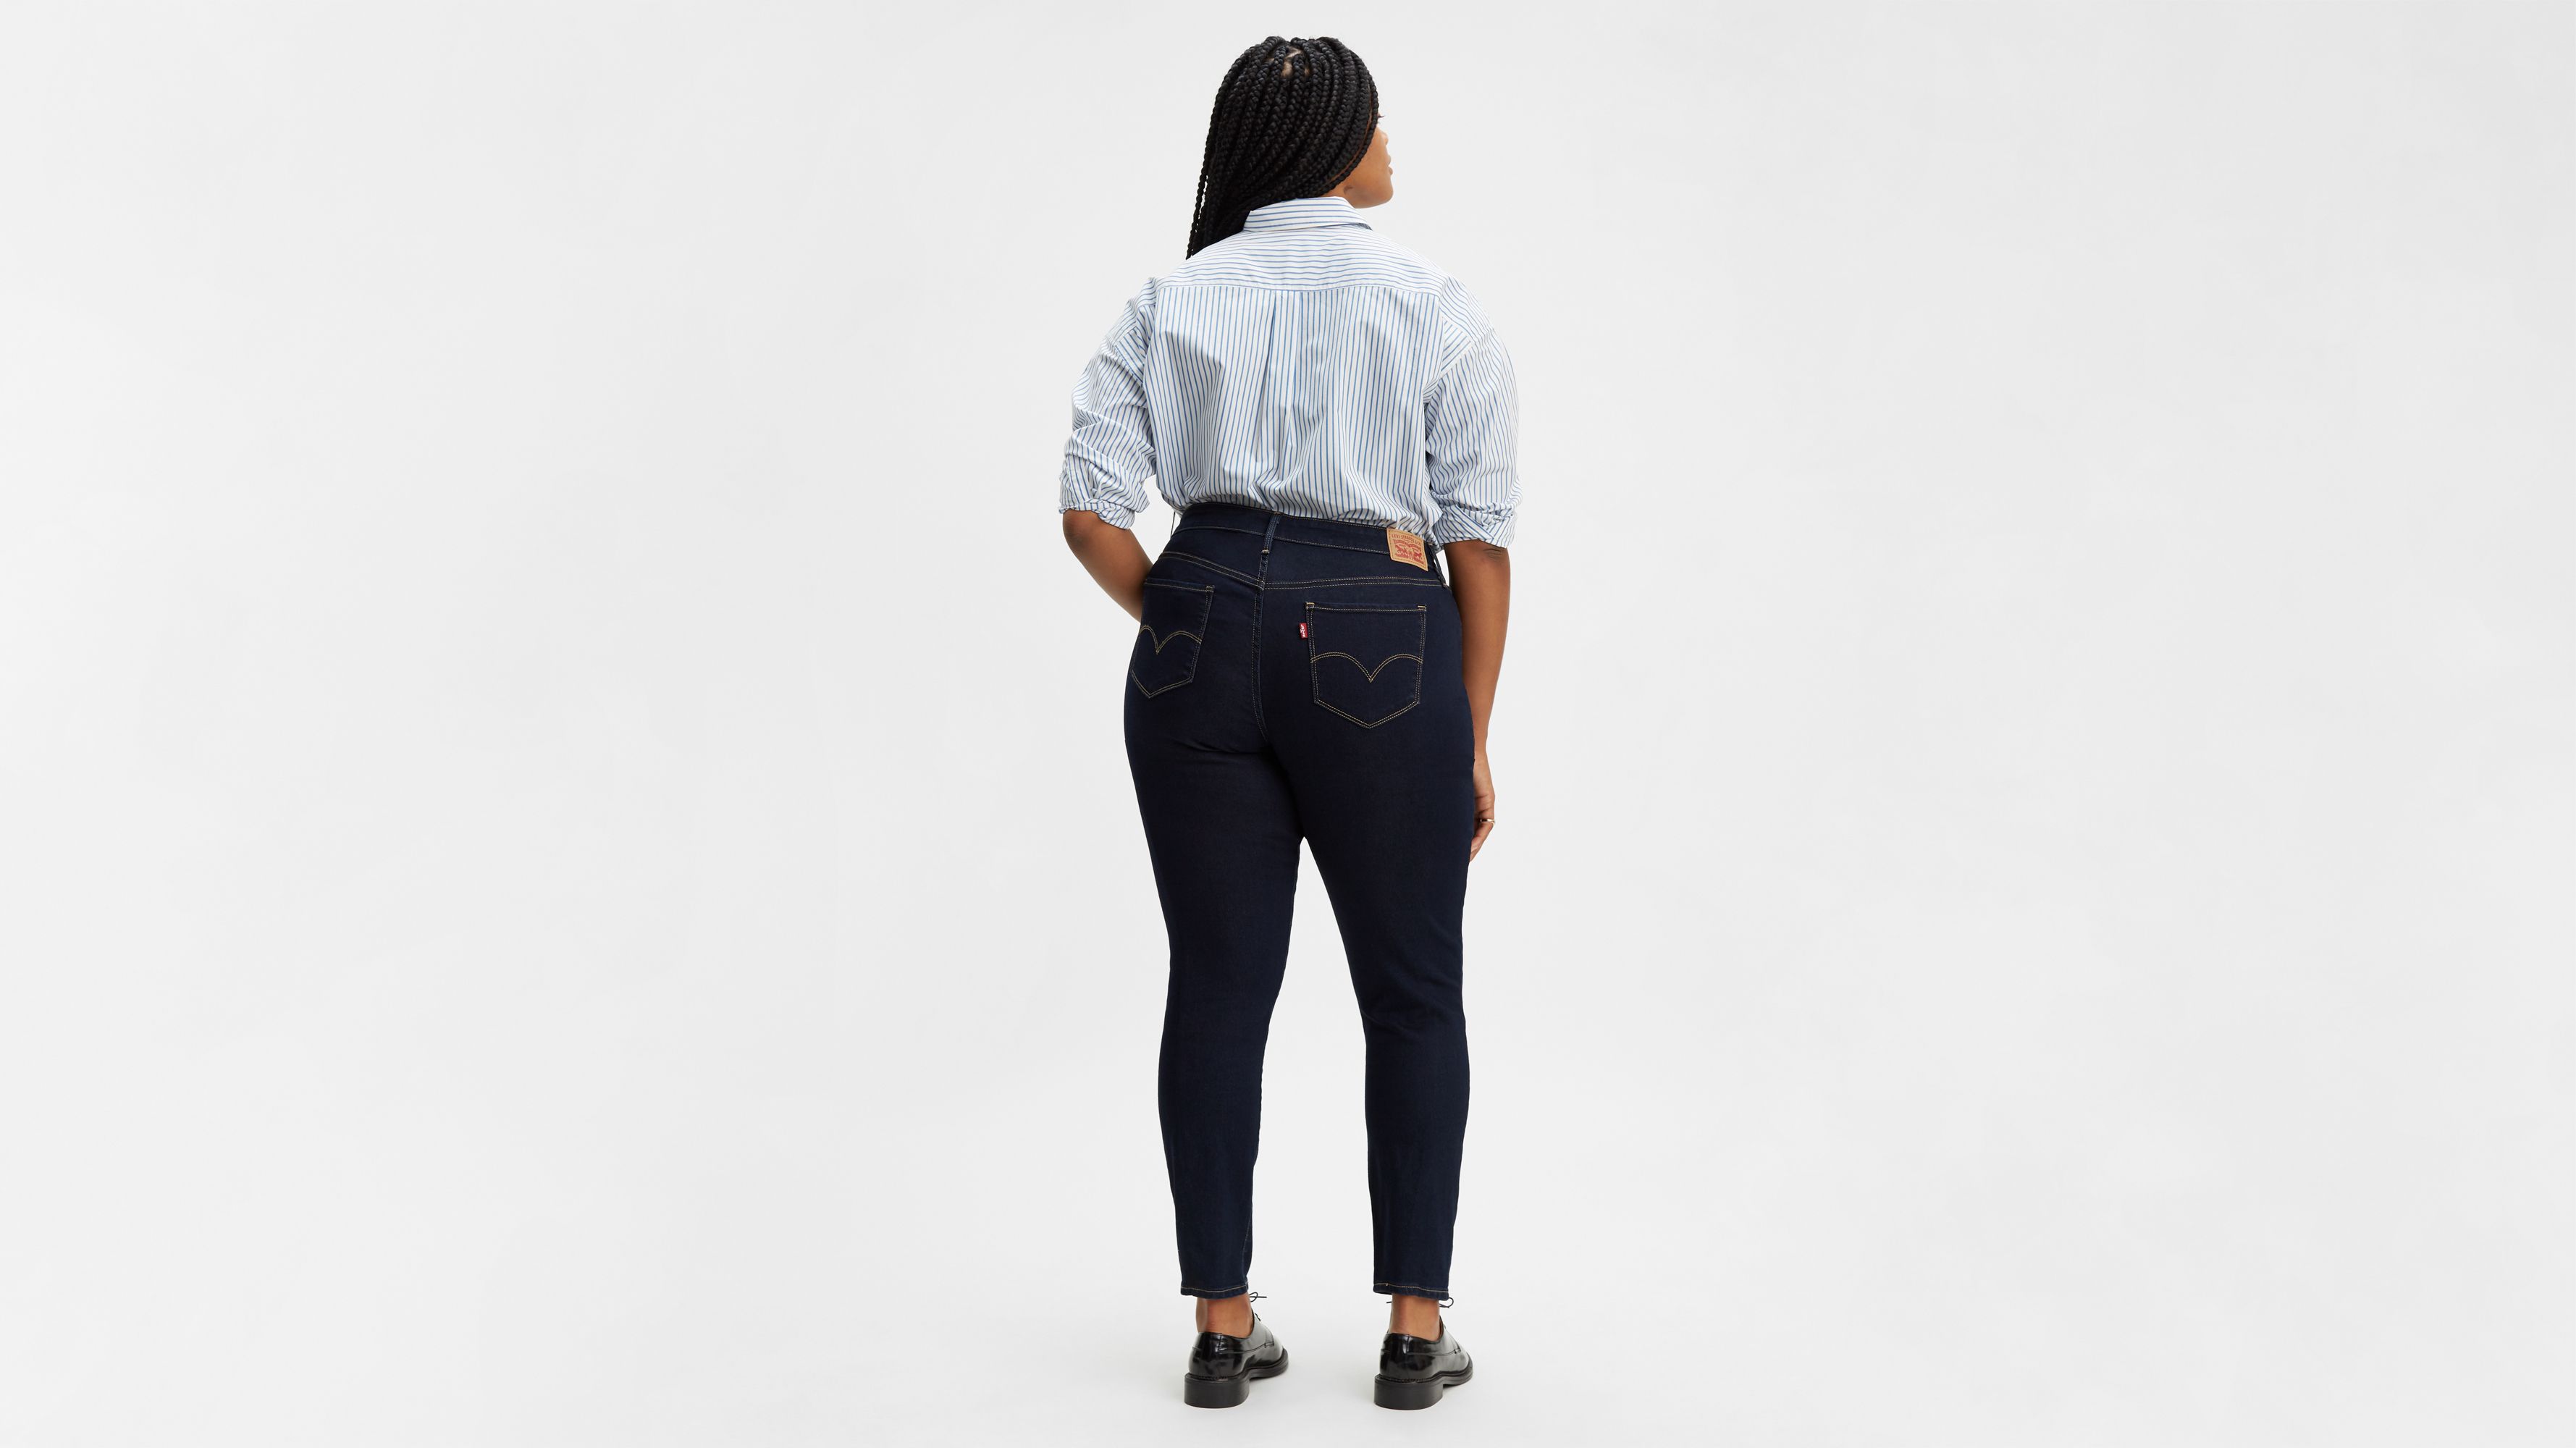 levis 512 womens jeans plus size